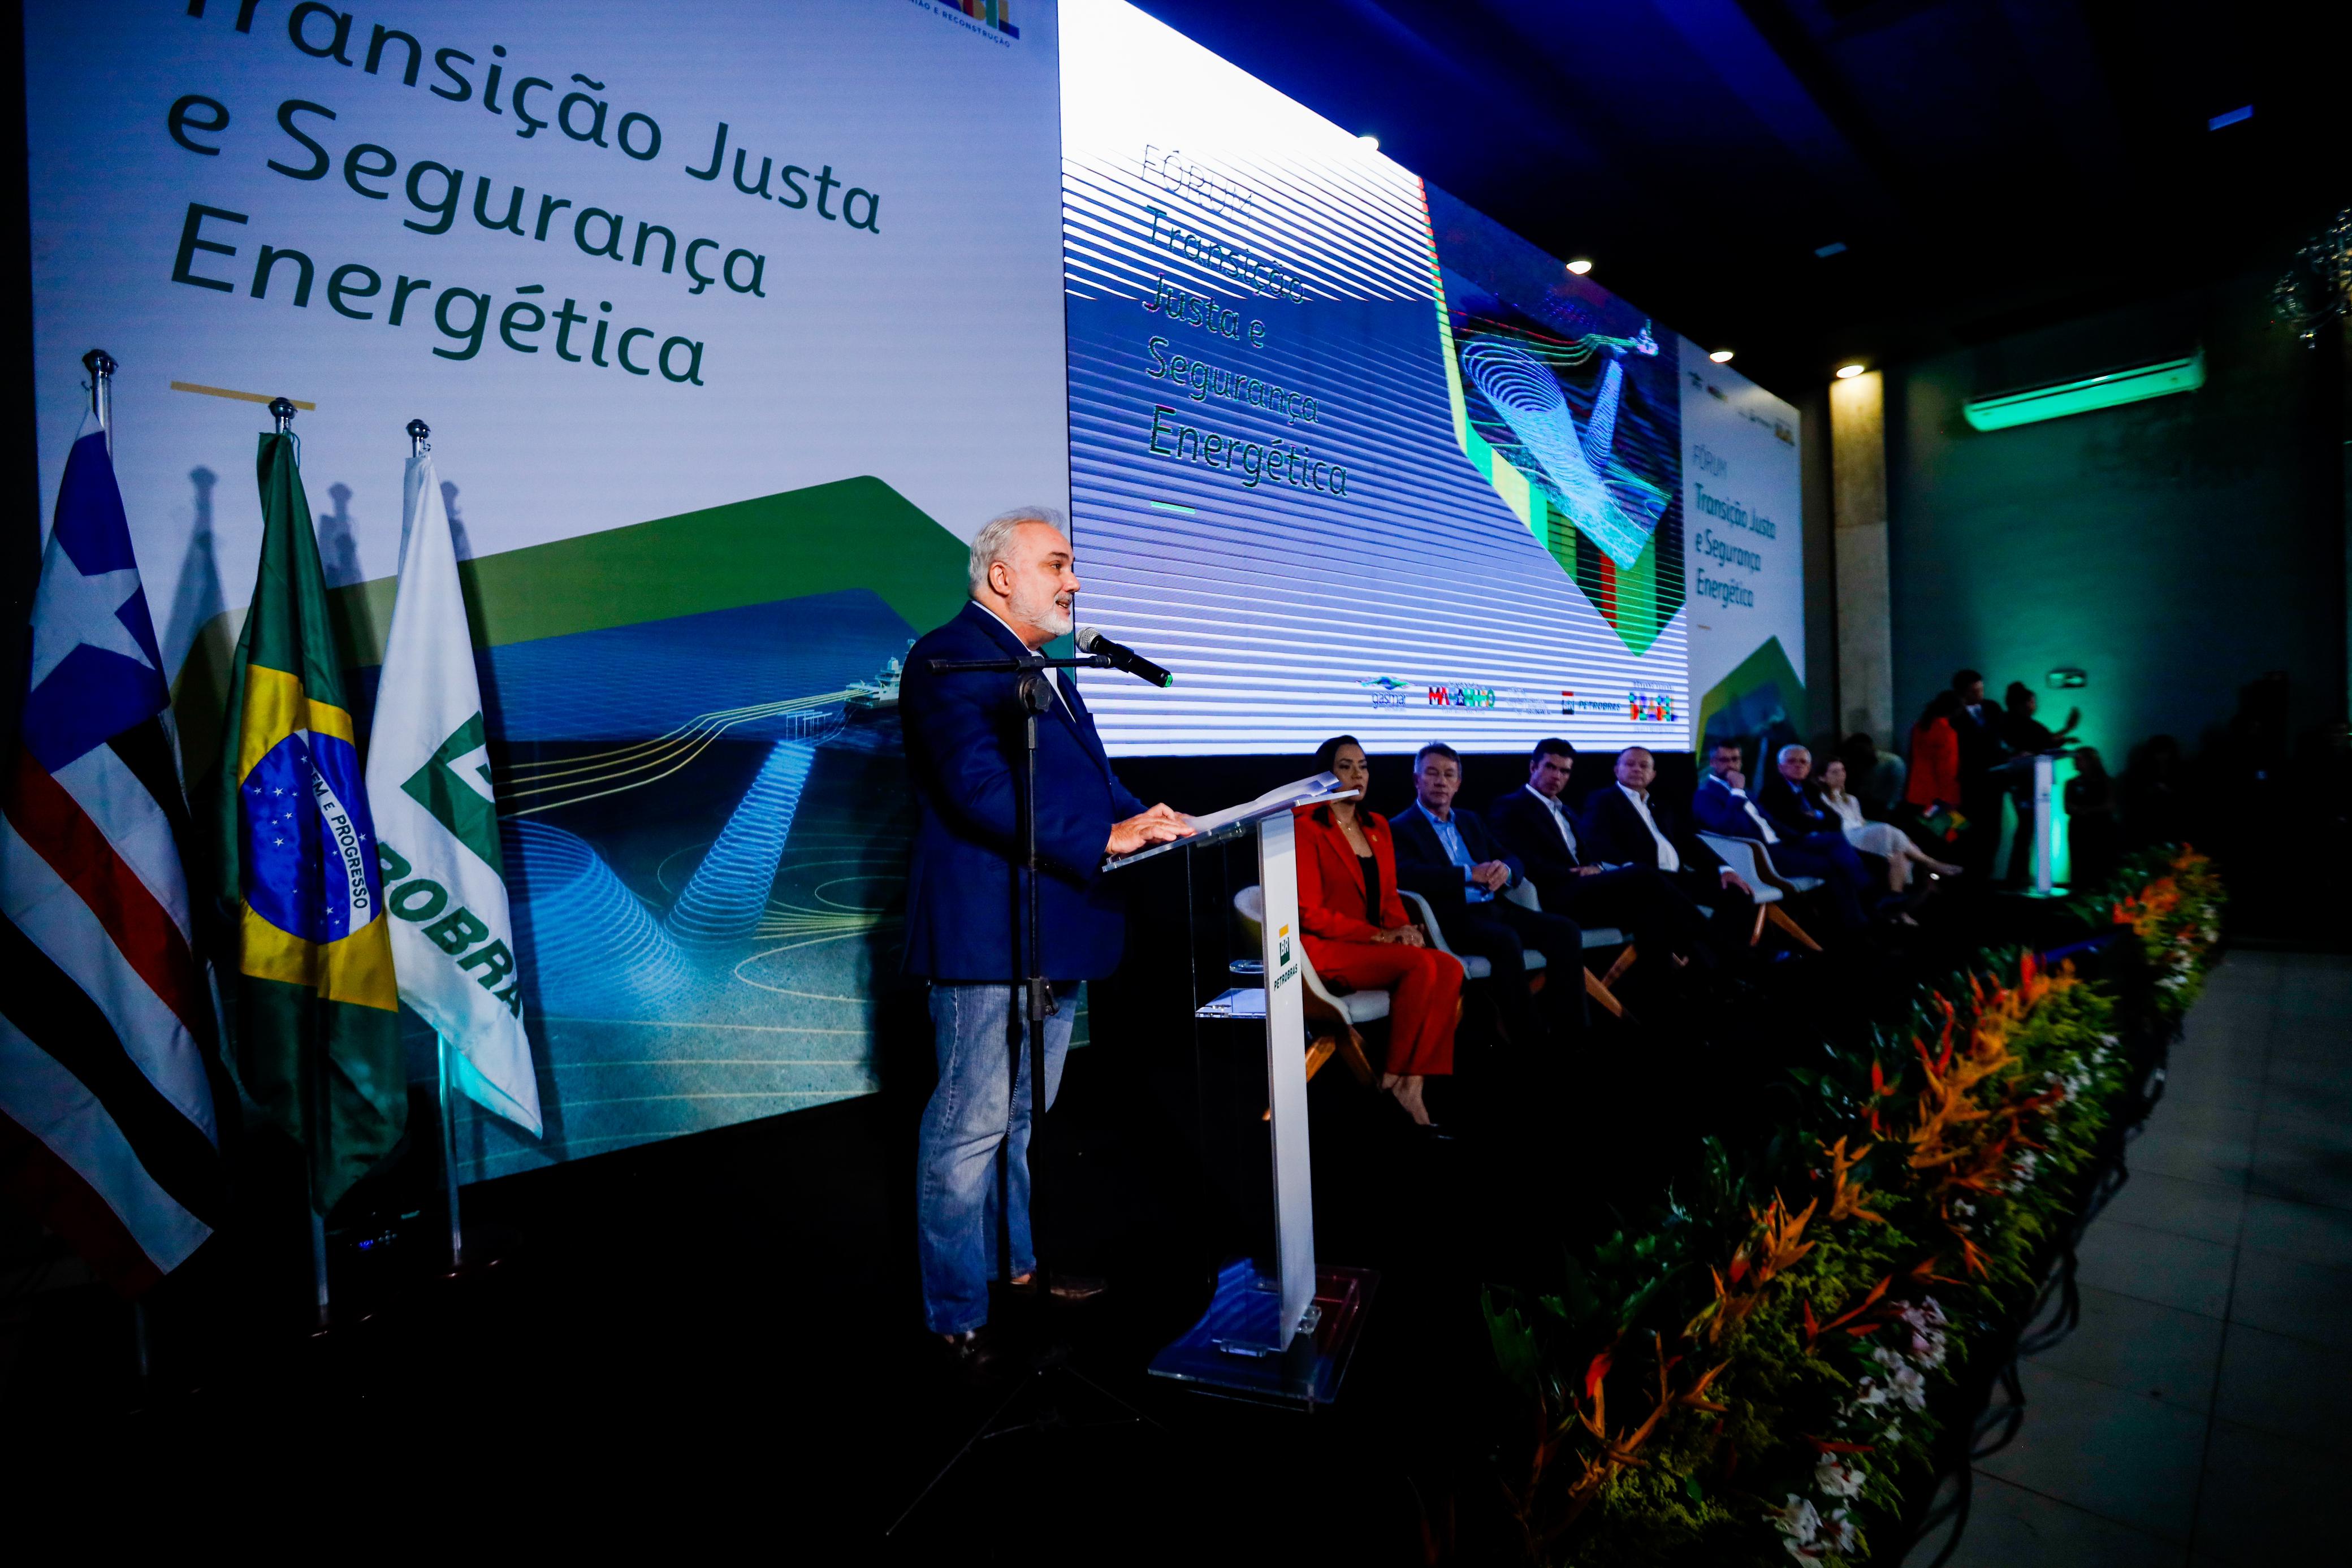 Presidente da Petrobras, Jean Paul Prates, na abertura do fórum “Transição Justa e Segurança Energética”, em São Luís, Maranhão